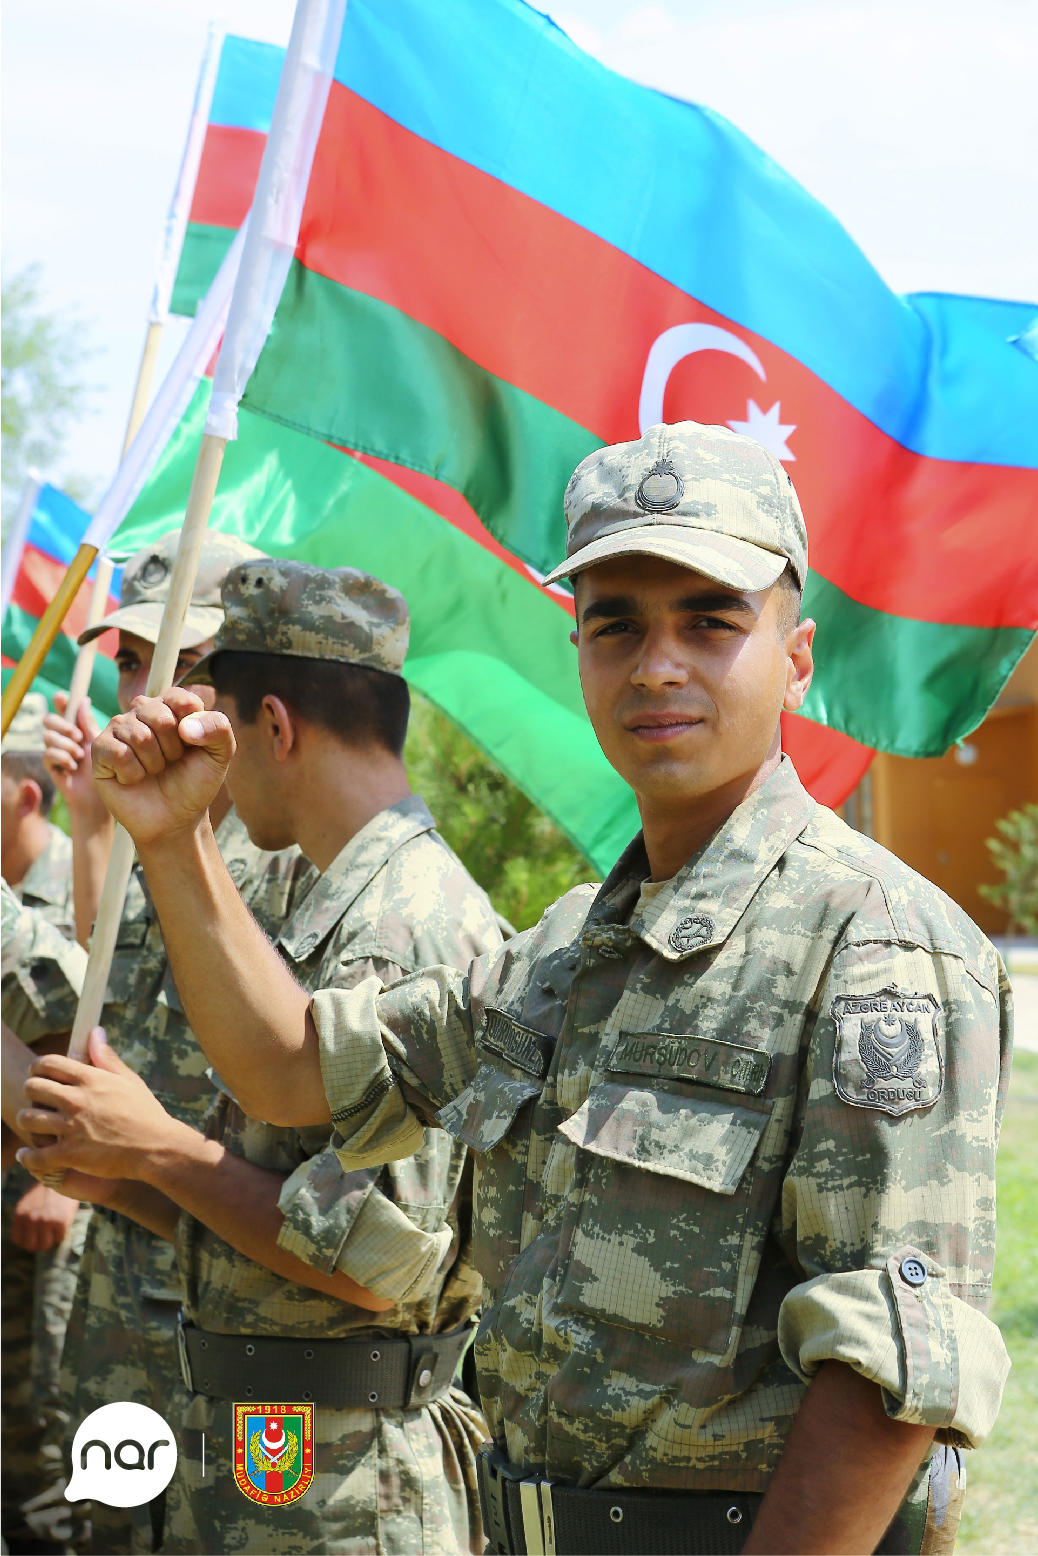 Nar создал мобильный переговорный пункт в нескольких воинских частях (ФОТО)